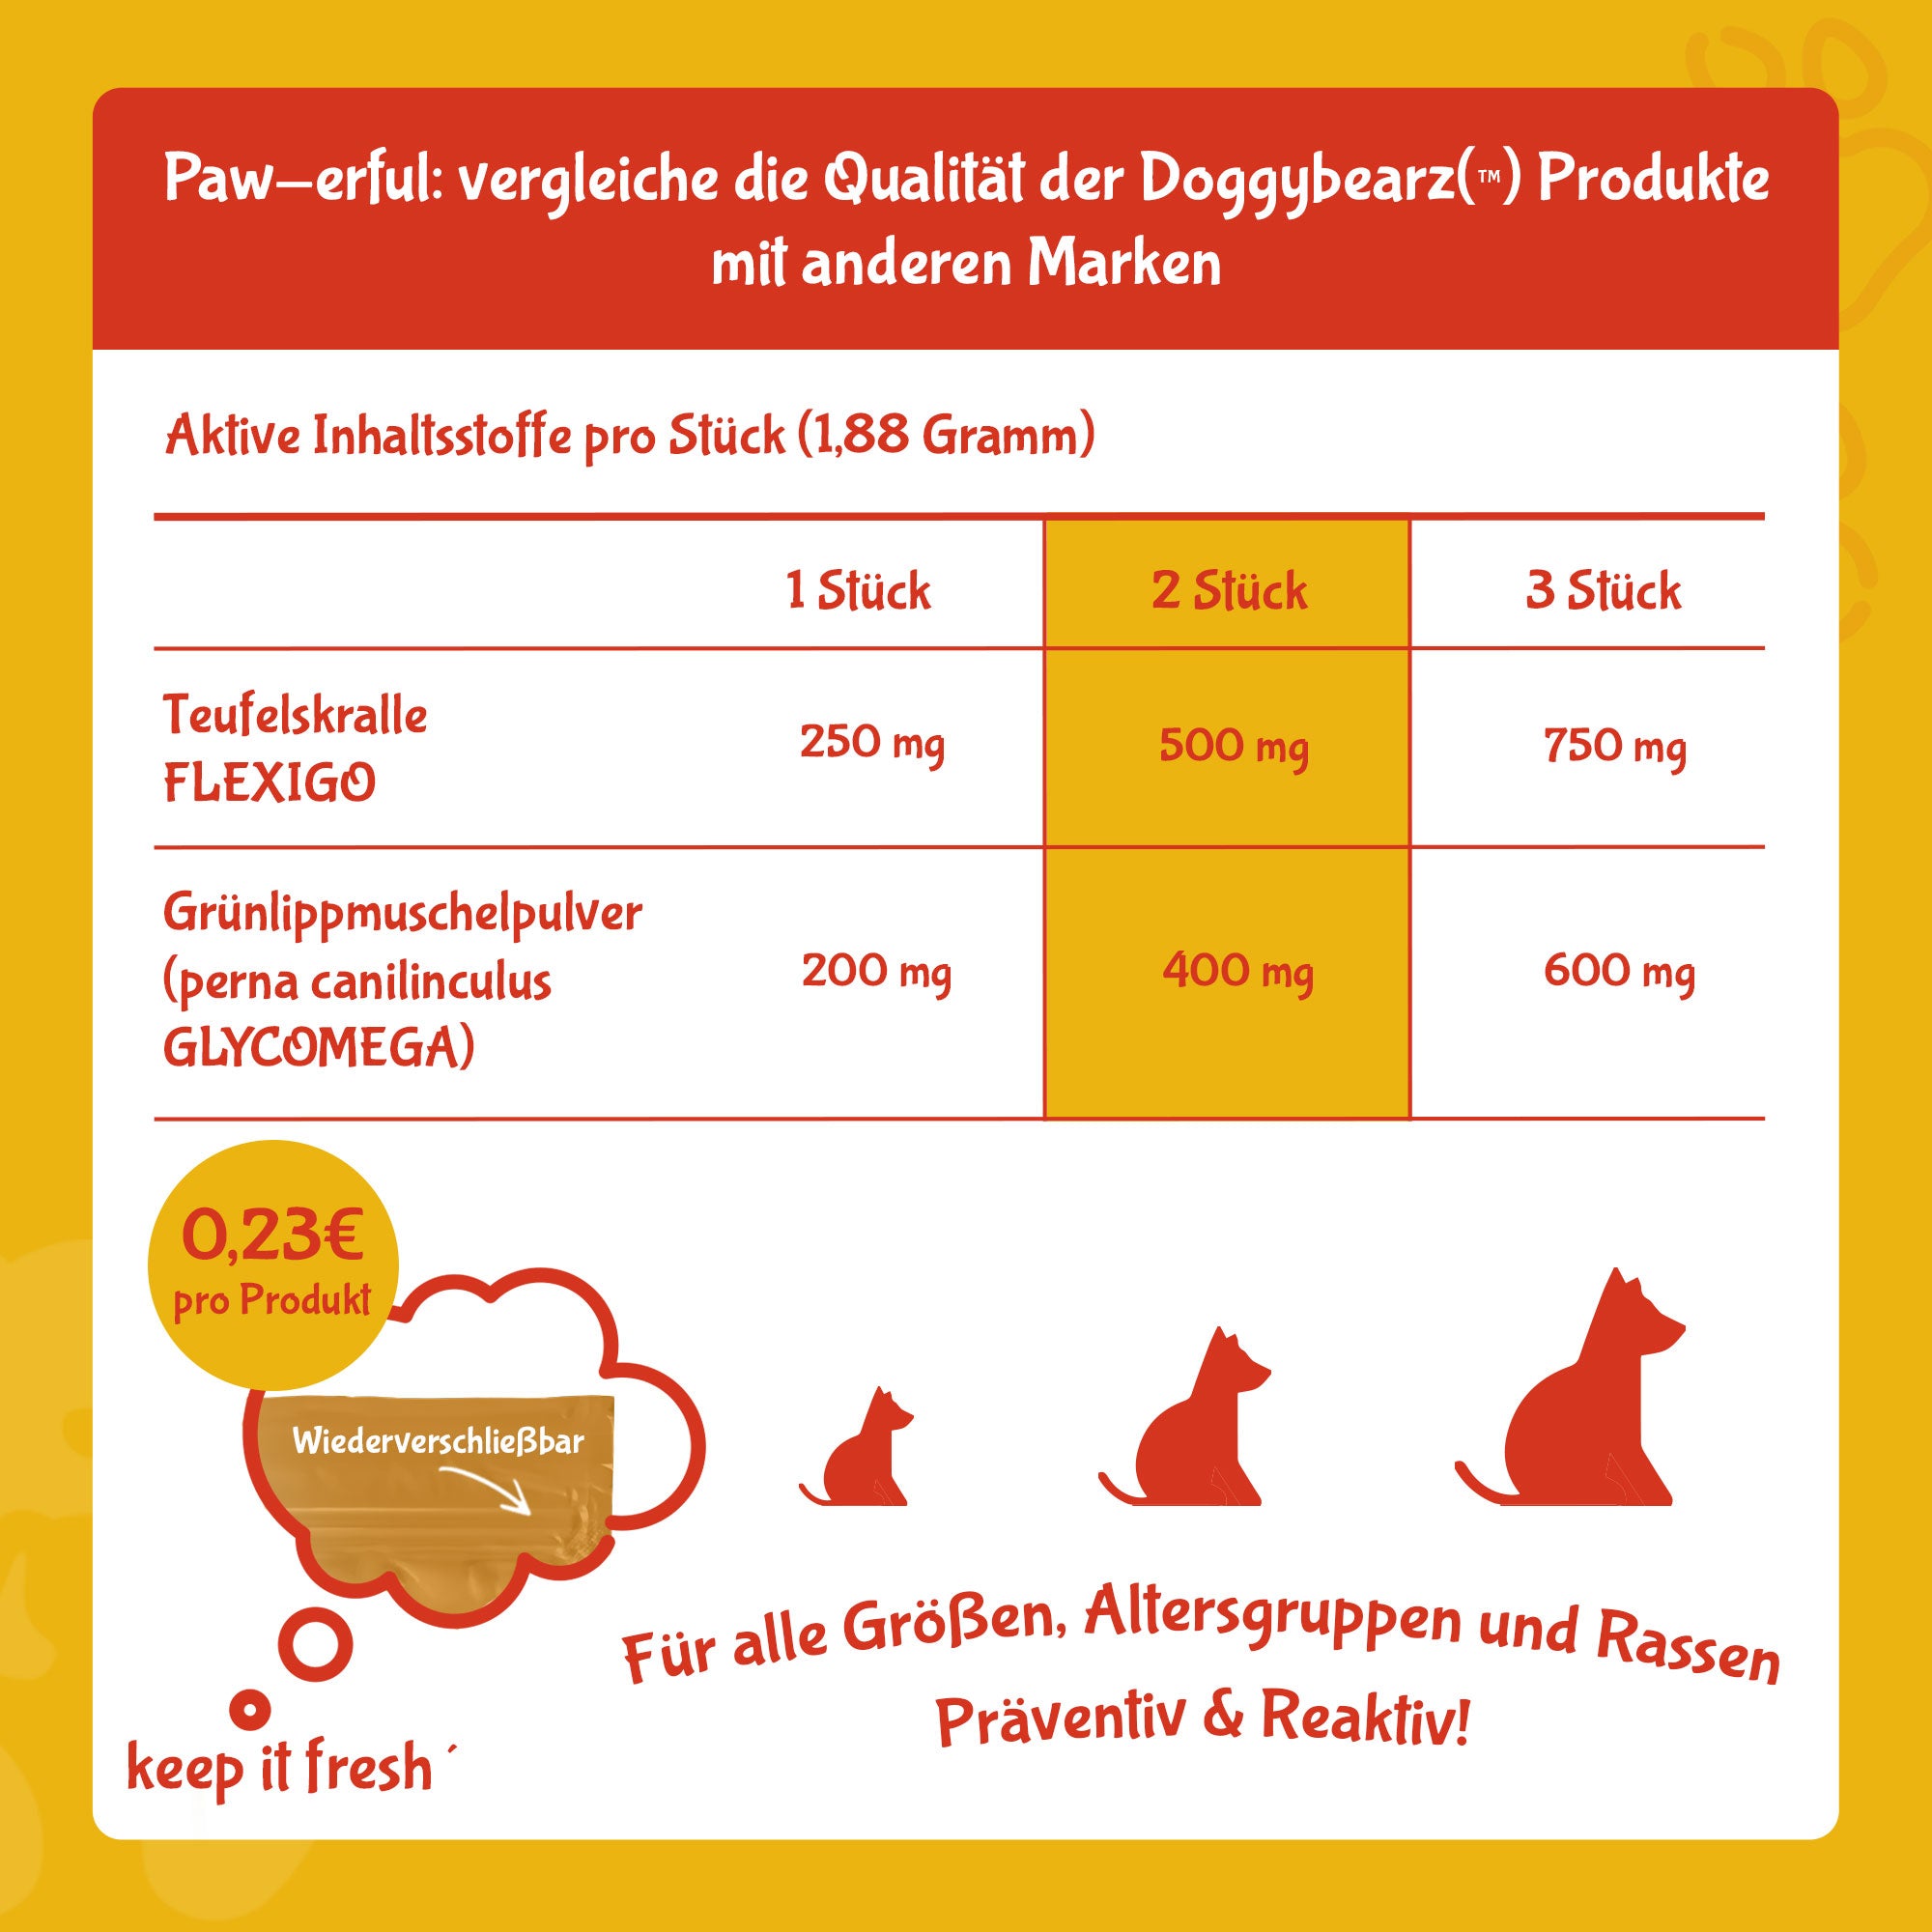 MOBILITY SOFTIEZ - funktionale Snacks für Hunde